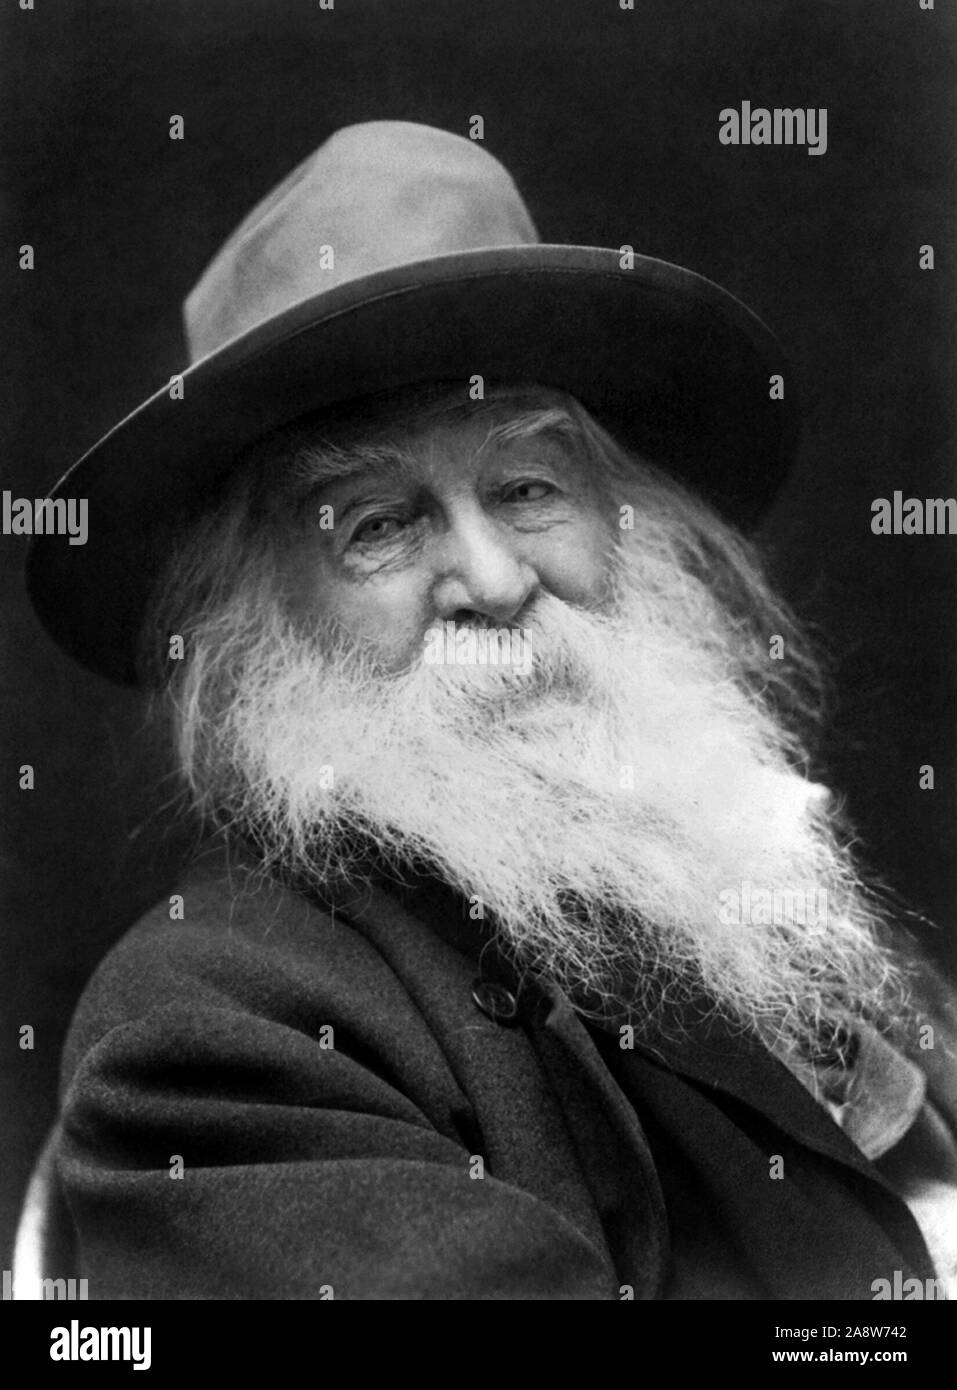 Jahrgang Porträt Foto der amerikanischen Dichter, Essayist und Journalist Walt Whitman (1819 - 1892). Foto ca. 1887 von George C Cox. Stockfoto